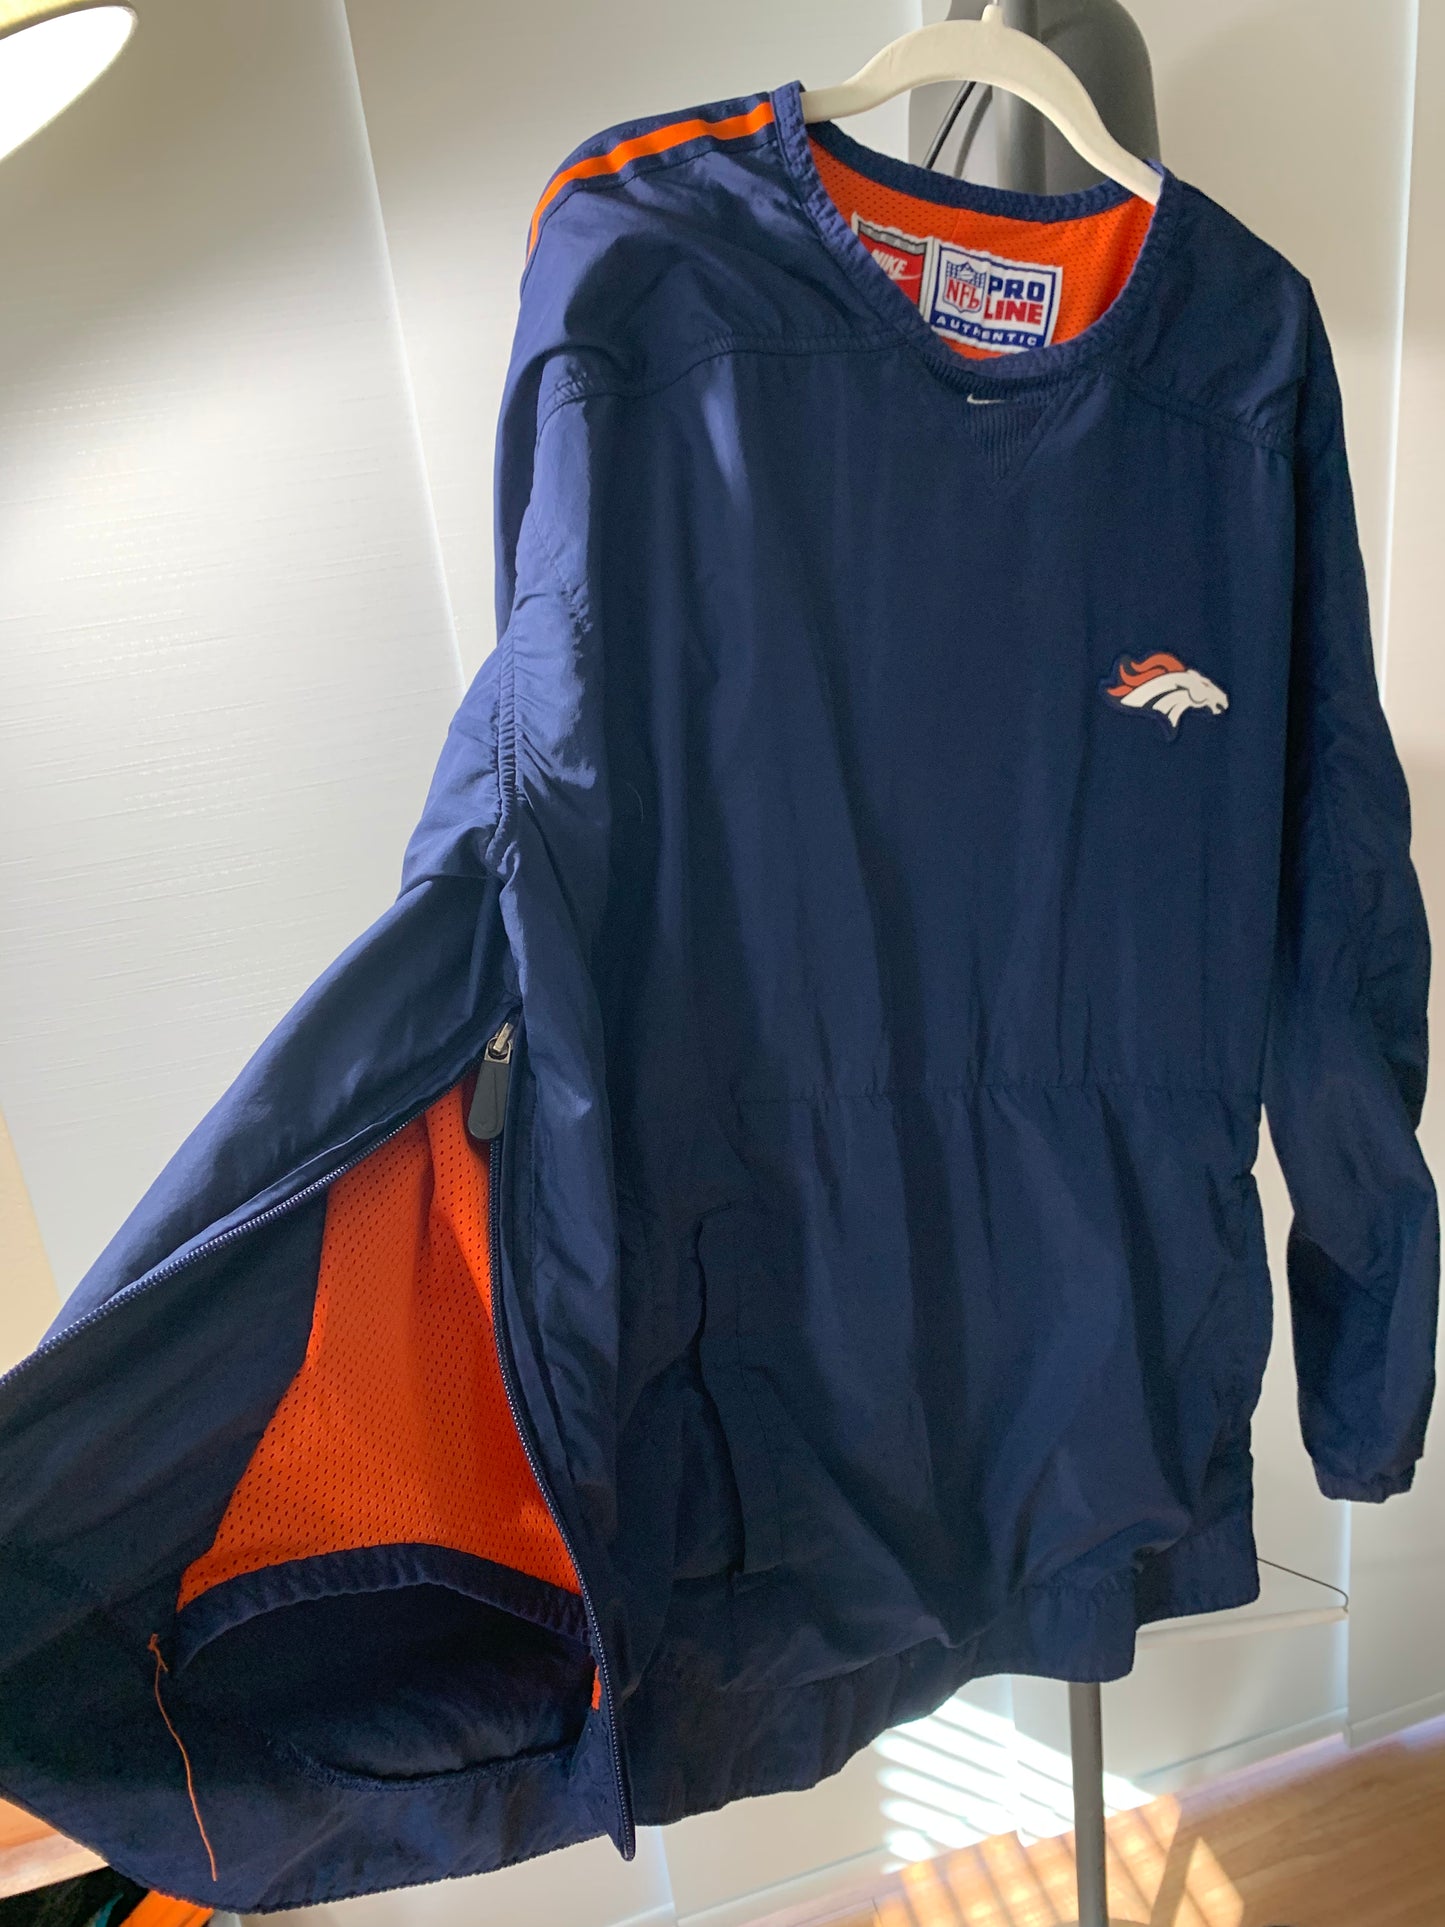 Broncos Nike jacket